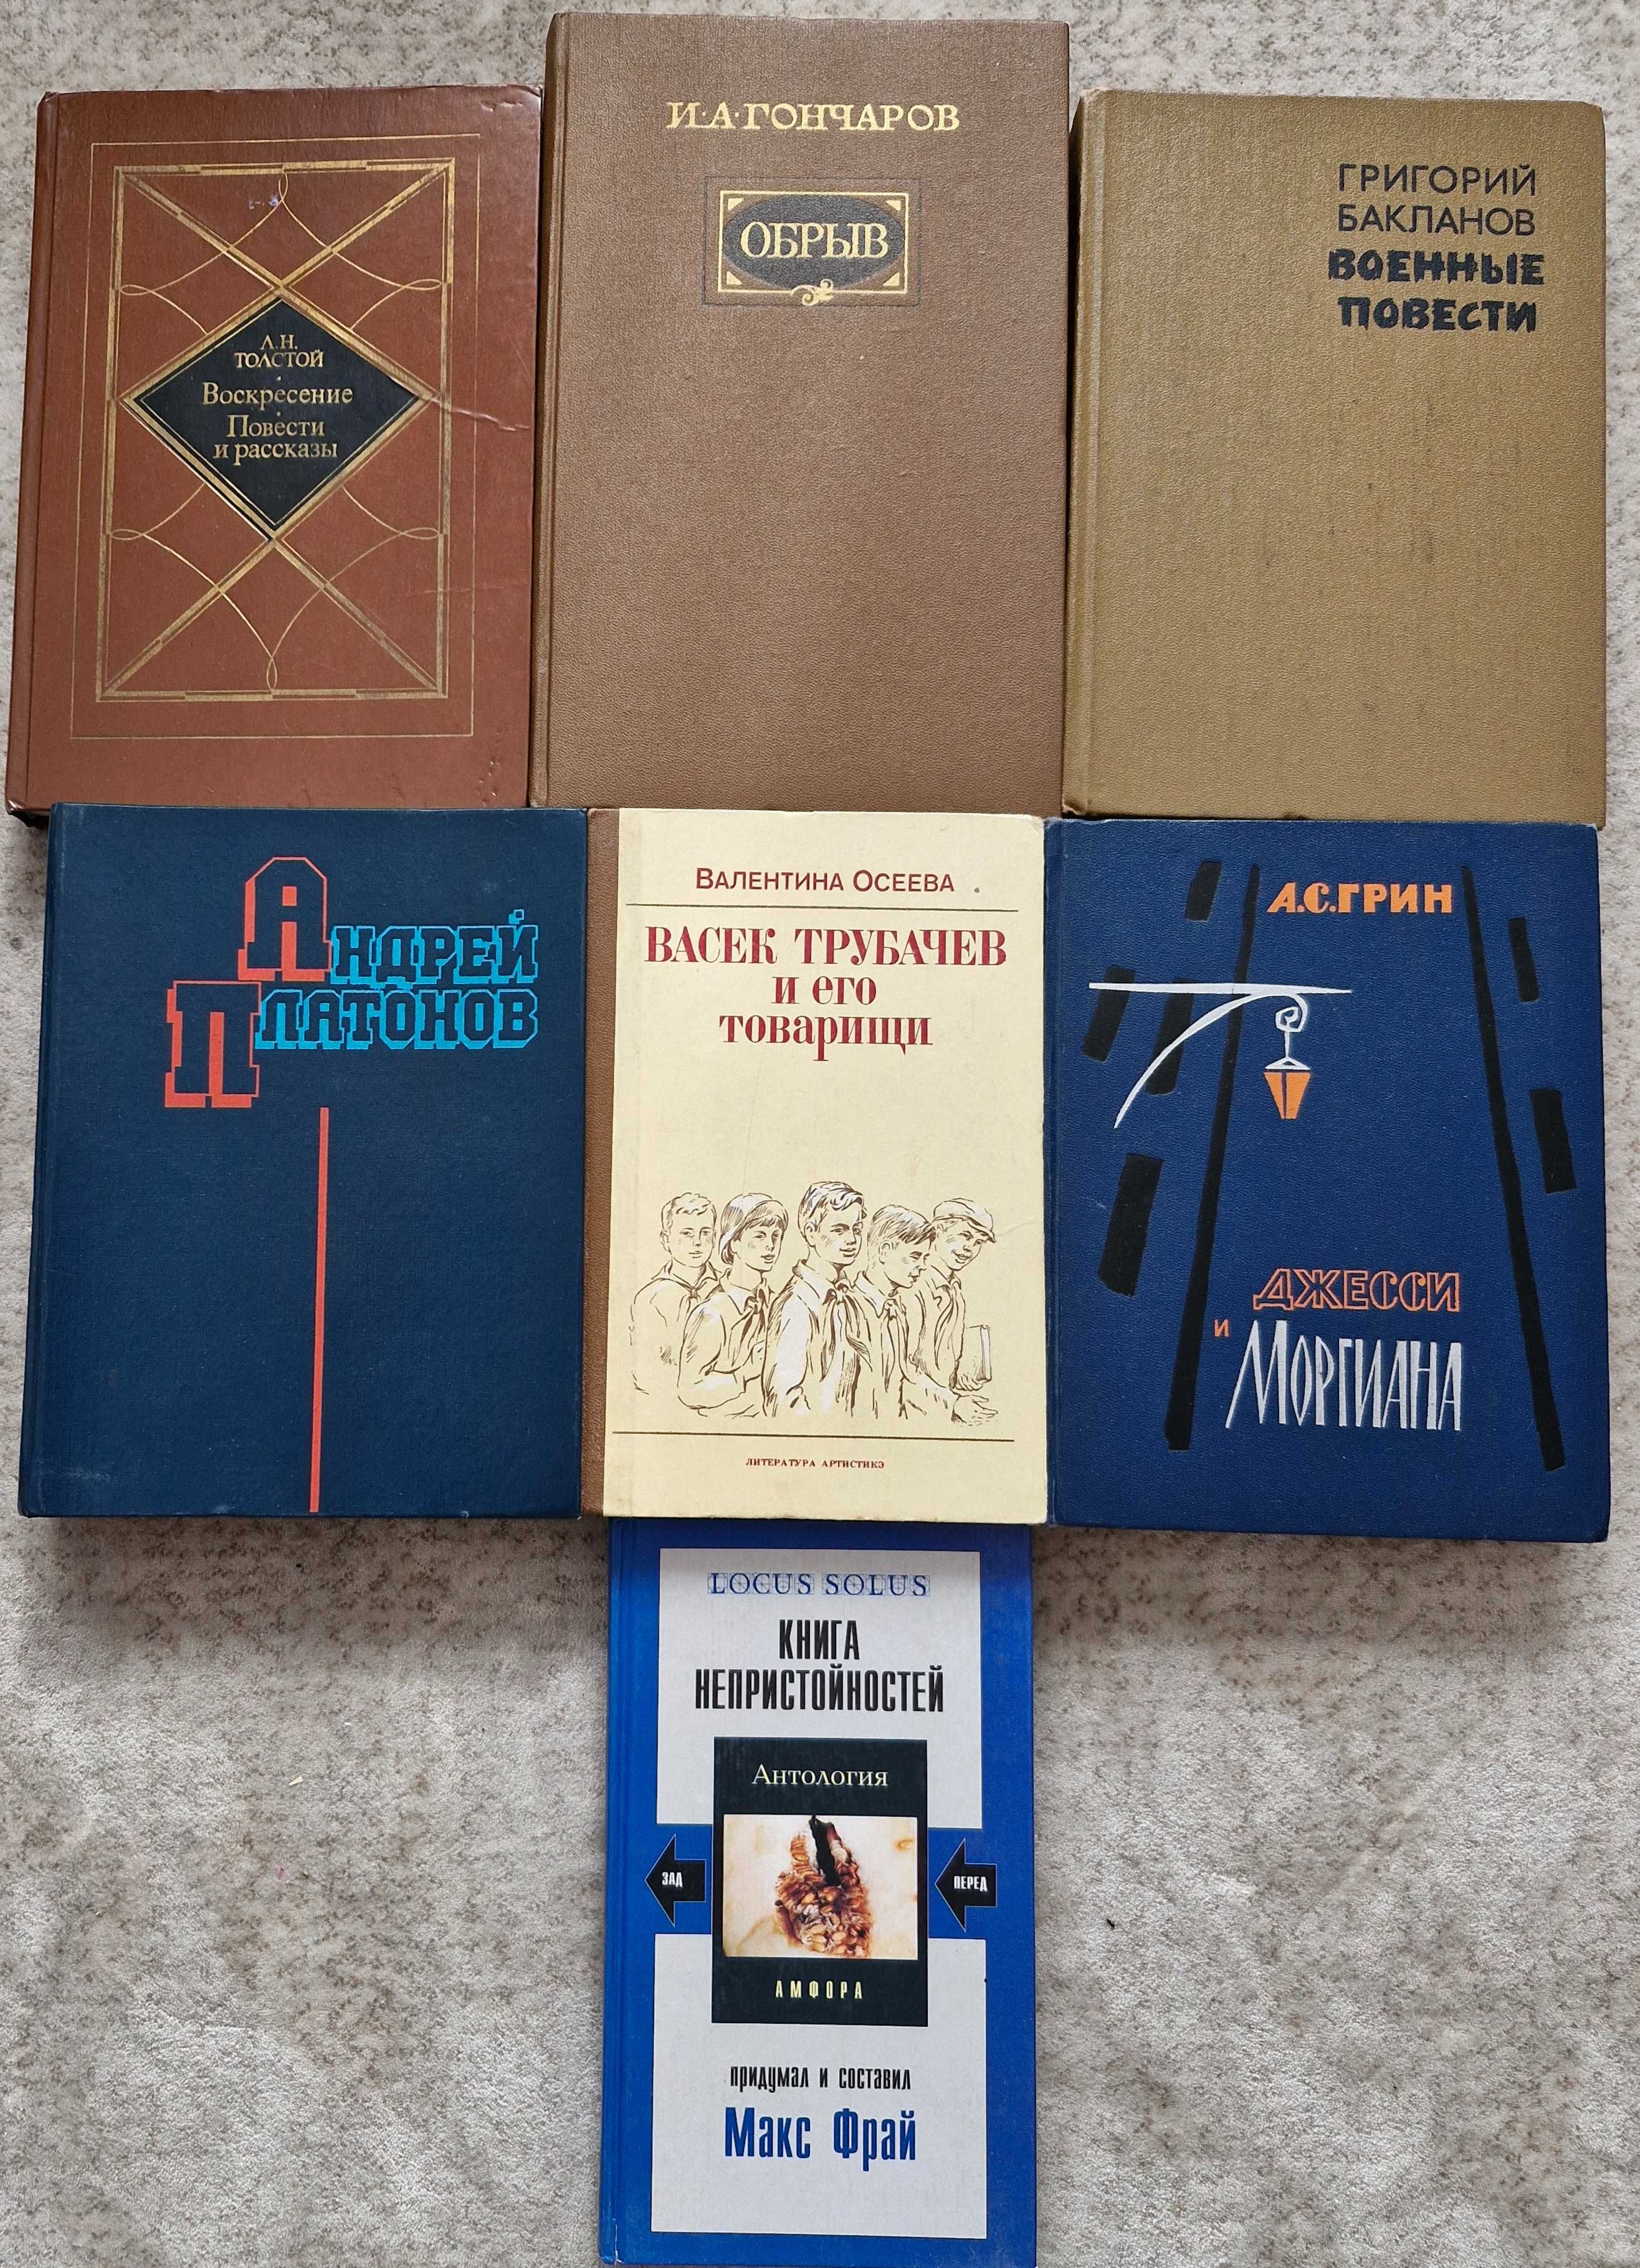 Продам художественные книги русских писателей (классика, см. карусель)